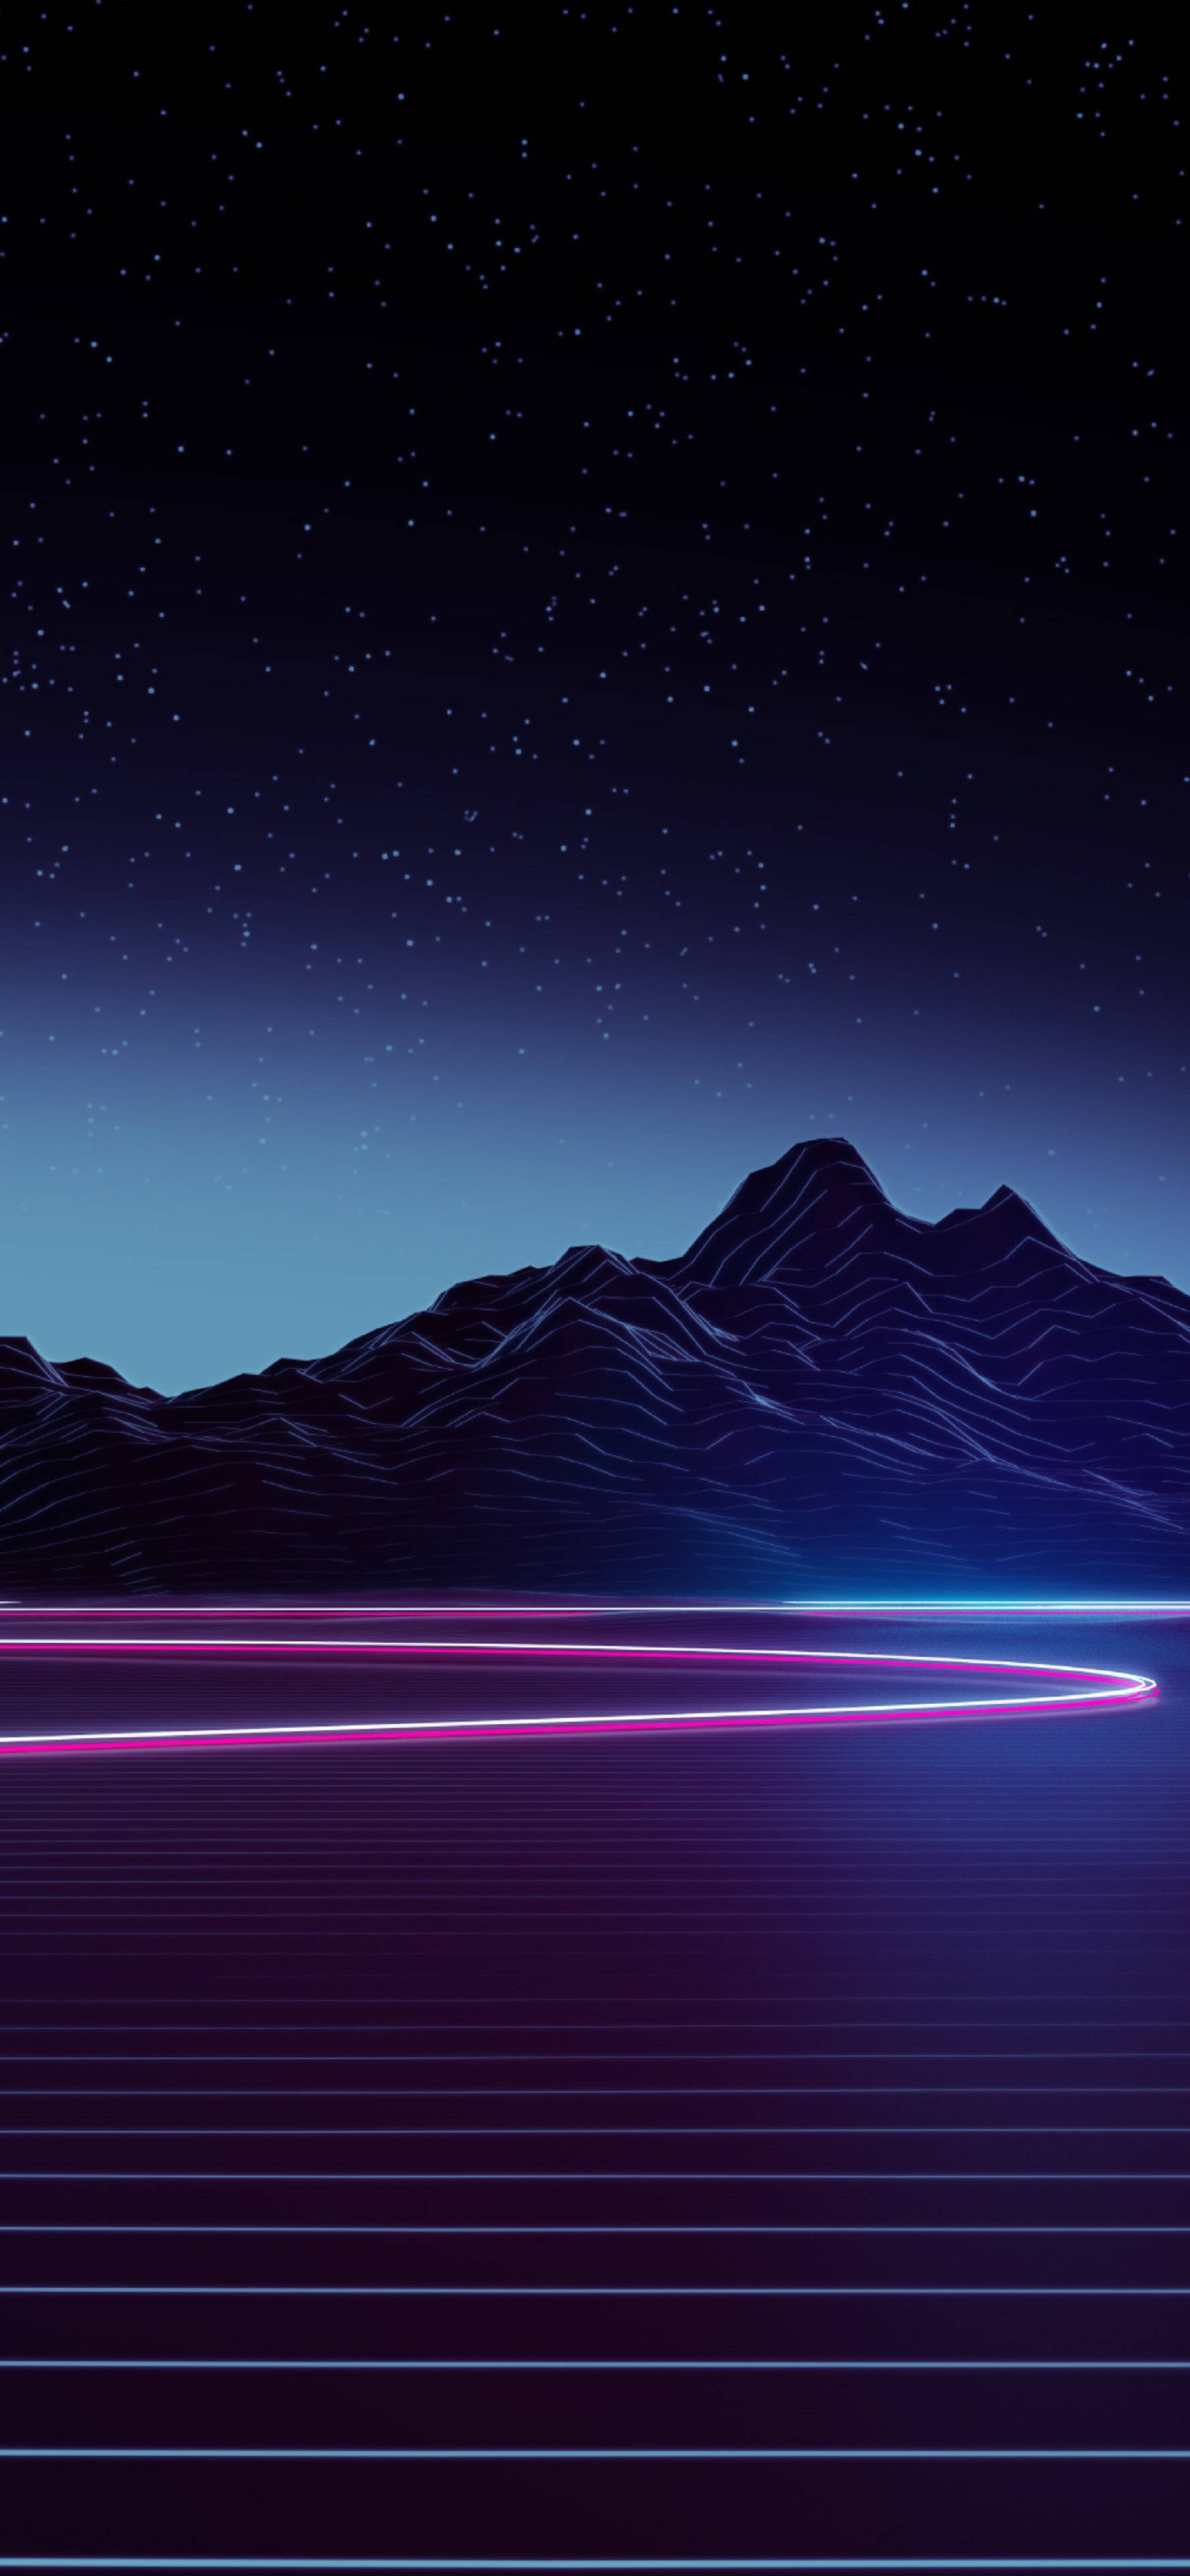 Download 4k Neon Iphone Mountain Highway Wallpaper 